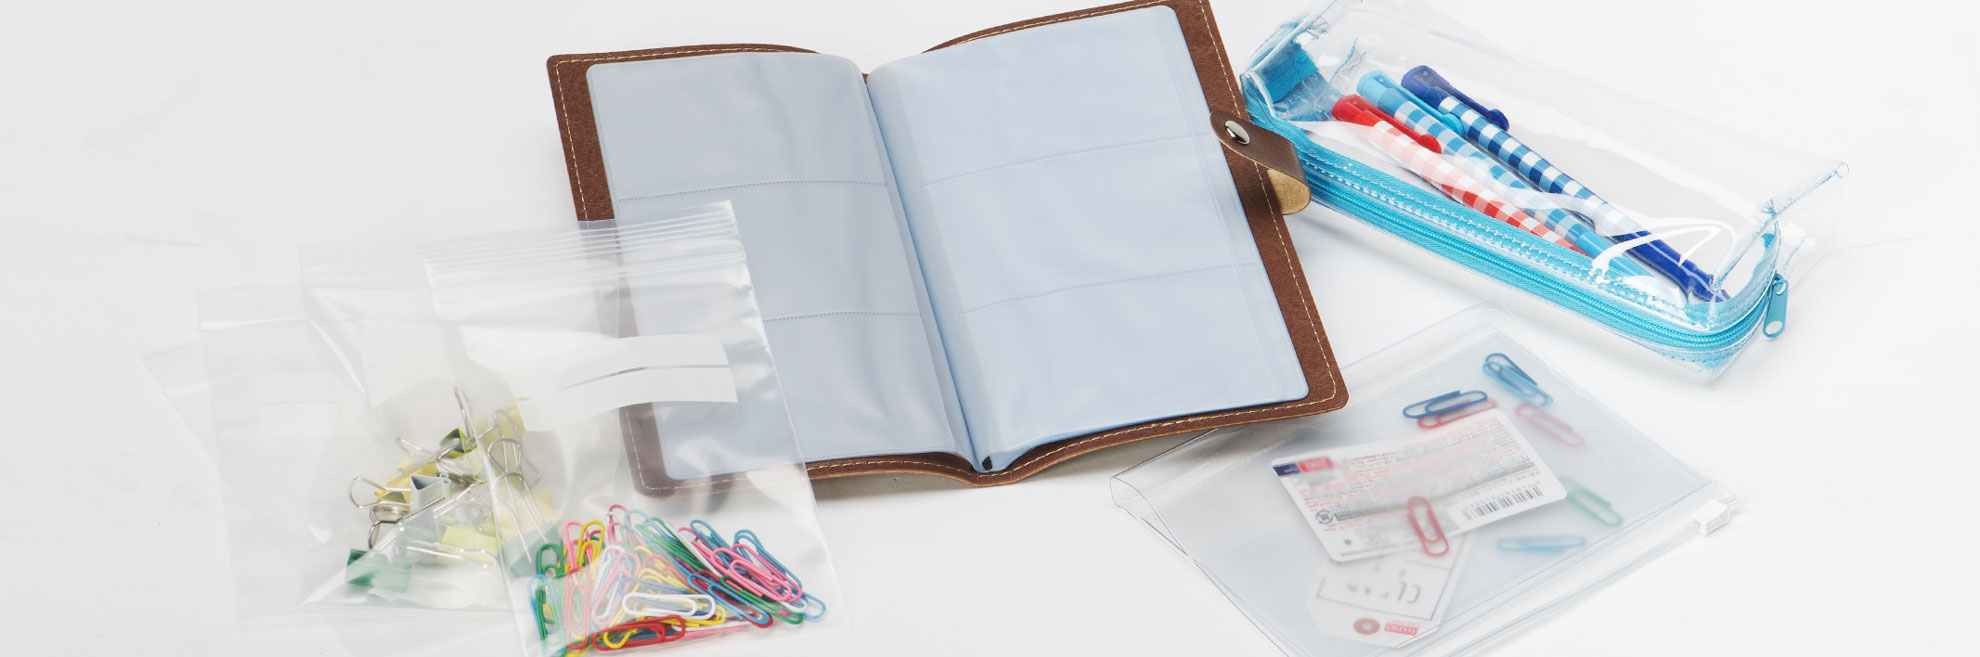 超级透明胶布、厚透明胶布耐移行、客制化物性适合加工pvc塑胶夹链袋、pvc胶布拉链包、笔袋、透明化妆包